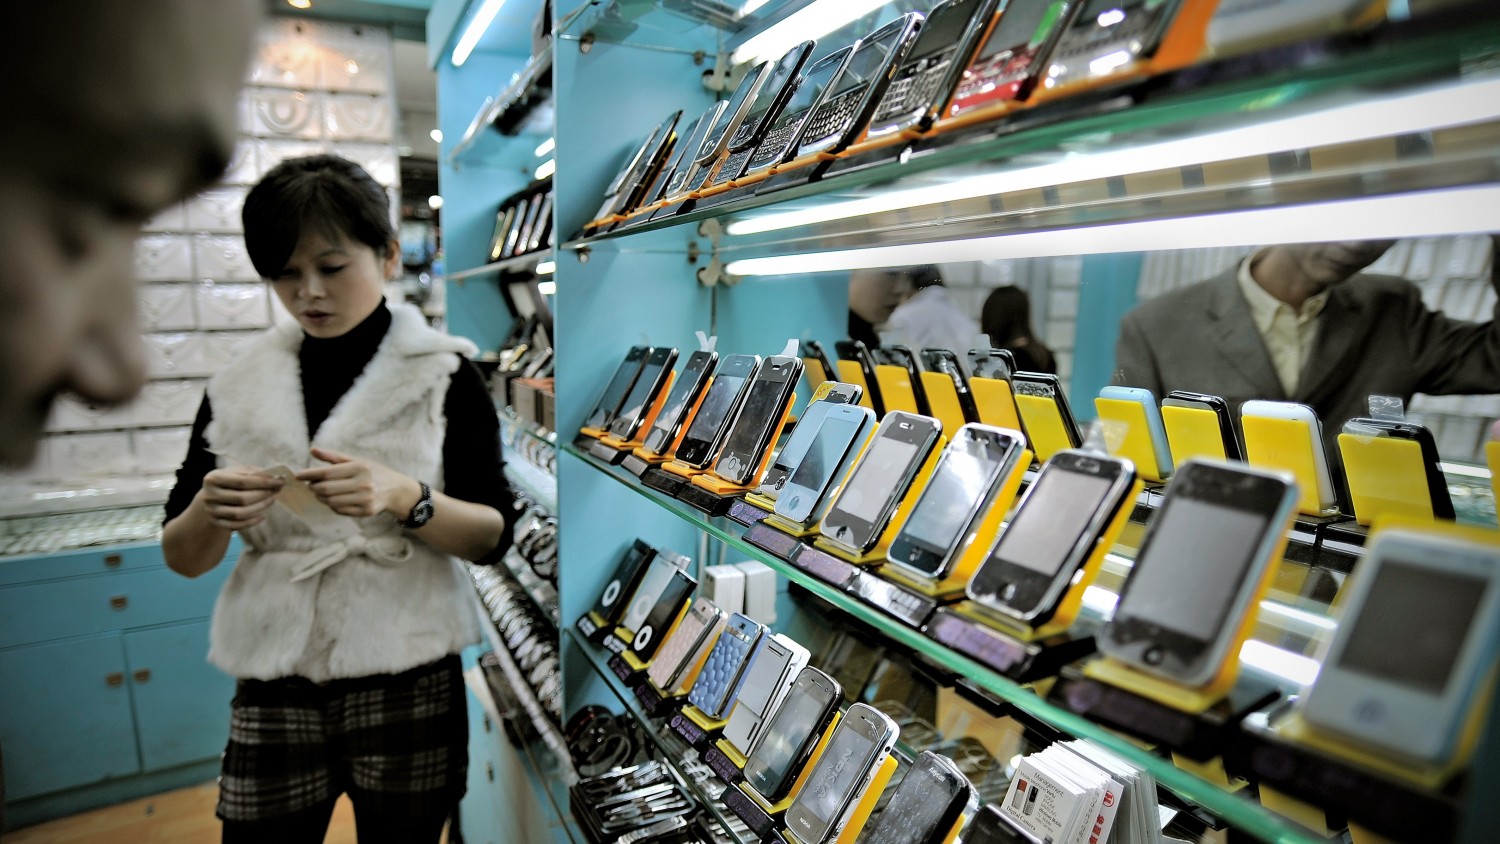 Аналитики: продажи смартфонов в Китае упадут на 30-50% из-за коронавируса